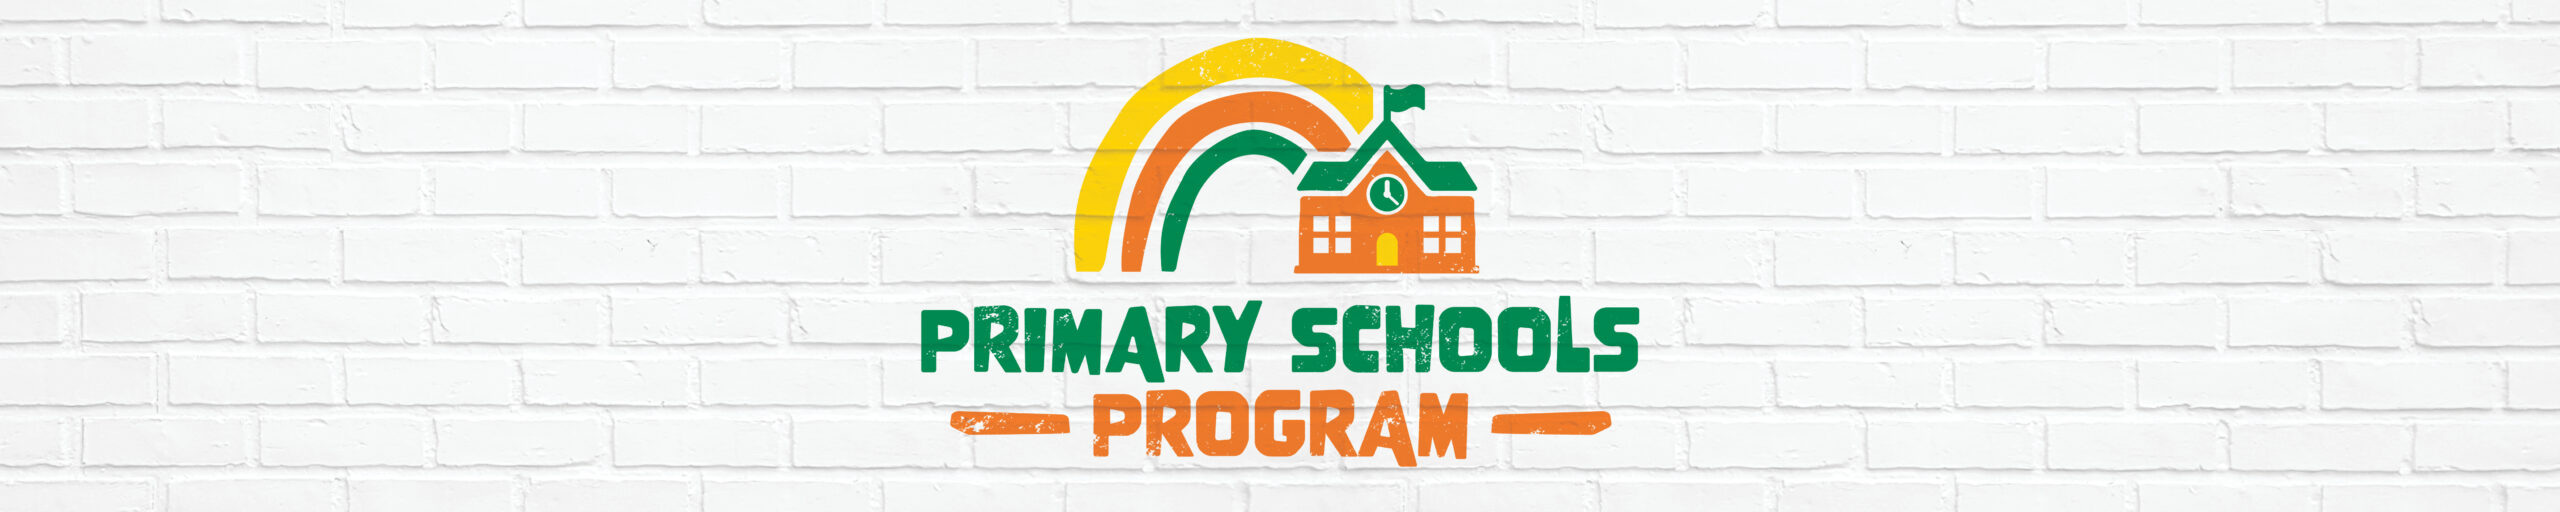 CRT Primary School Program